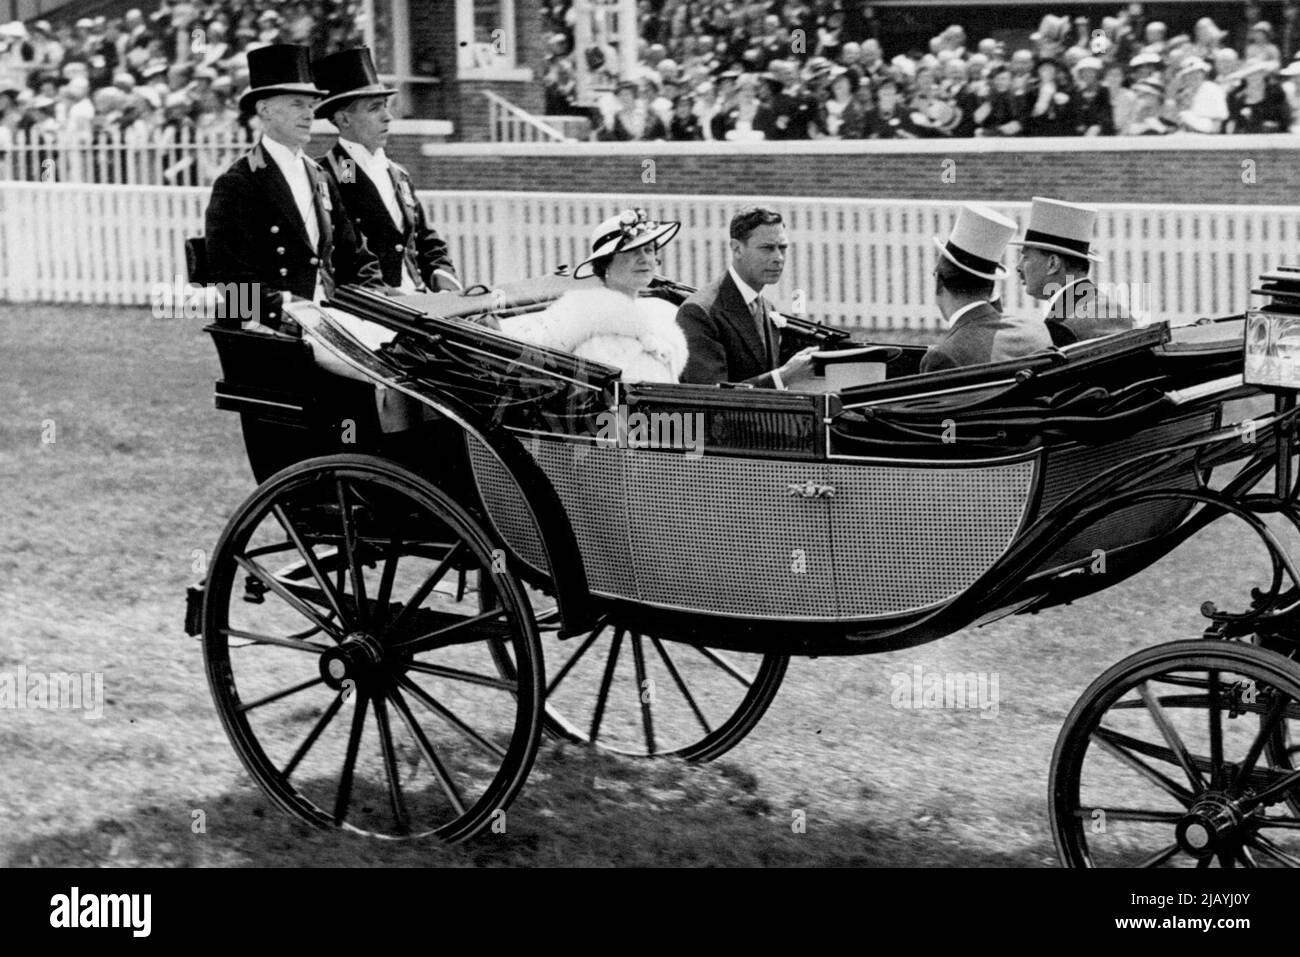 Rencontre de la course de l'année du couronnement à Ascot King et Queen assister -- le Roi et la Reine, accompagnés du duc de Gloucester et du duc de Kent, en descendant le parcours à l'arrivée à Ascot au jour le jour. 15 juin 1937. (Photo de Totopique Press). Banque D'Images